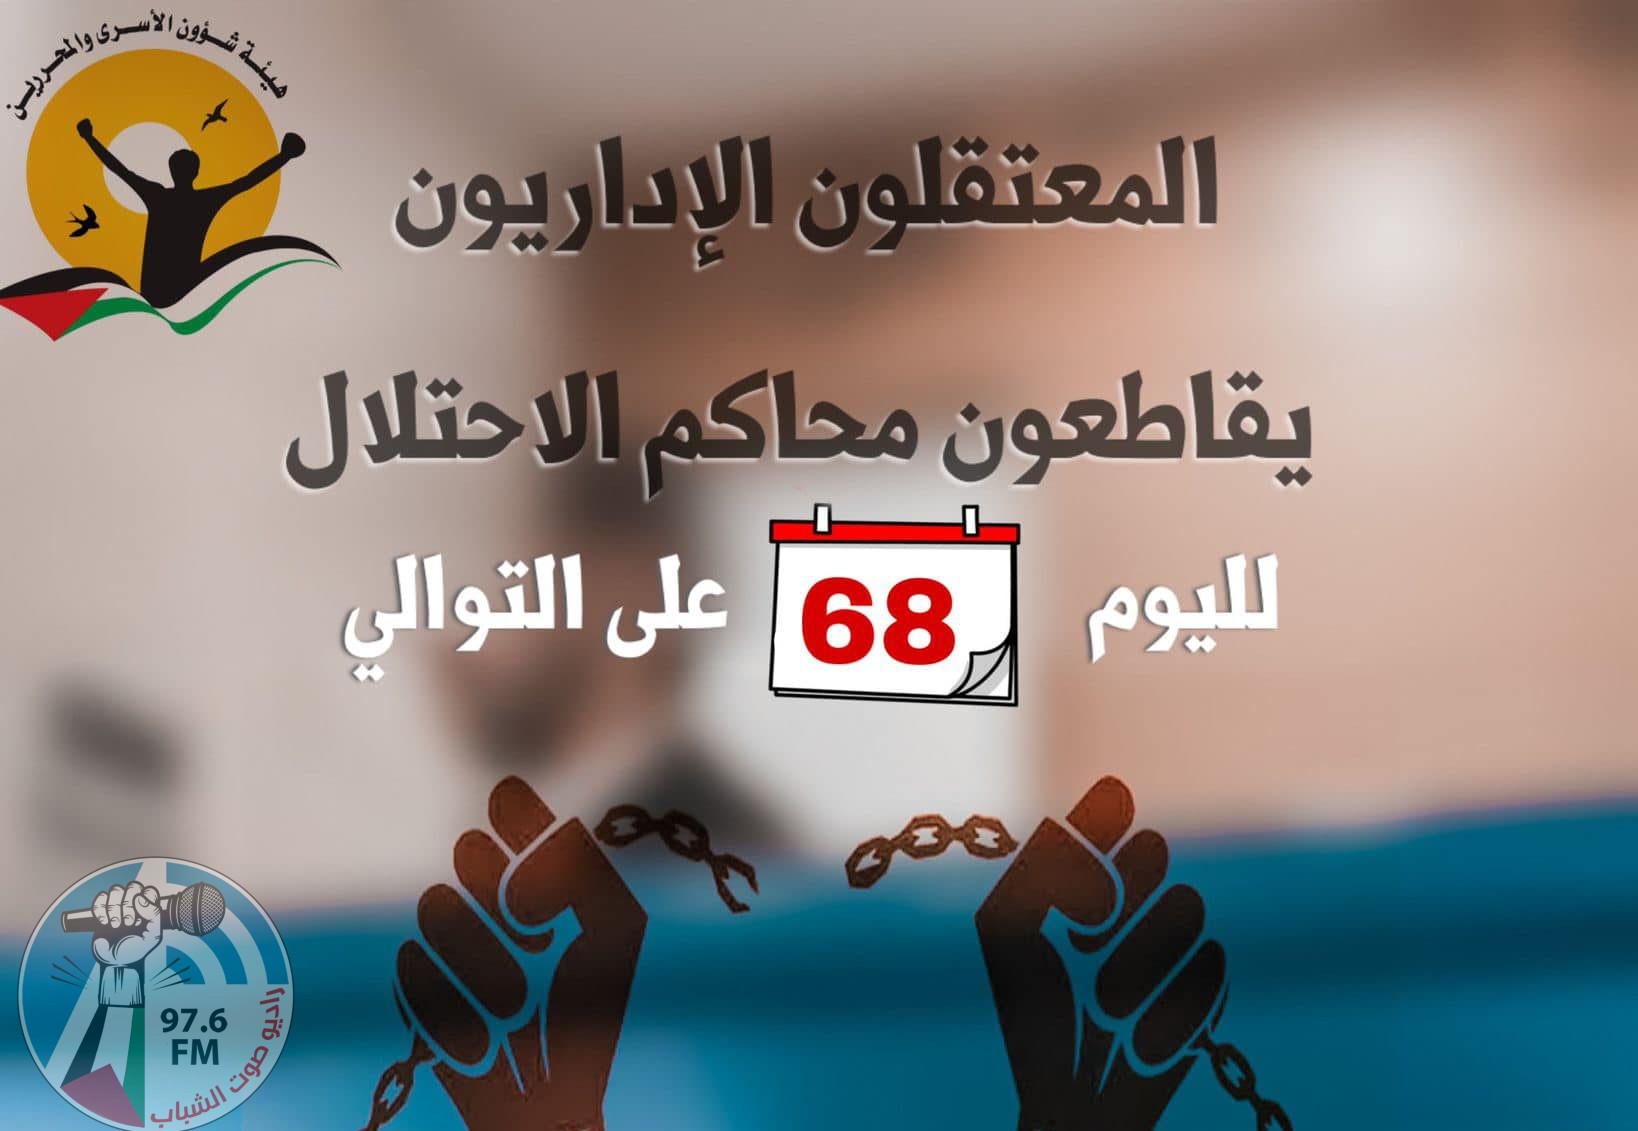 68 يوماً على مقاطعة الأسرى الإداريّين لمحاكم الاحتلال